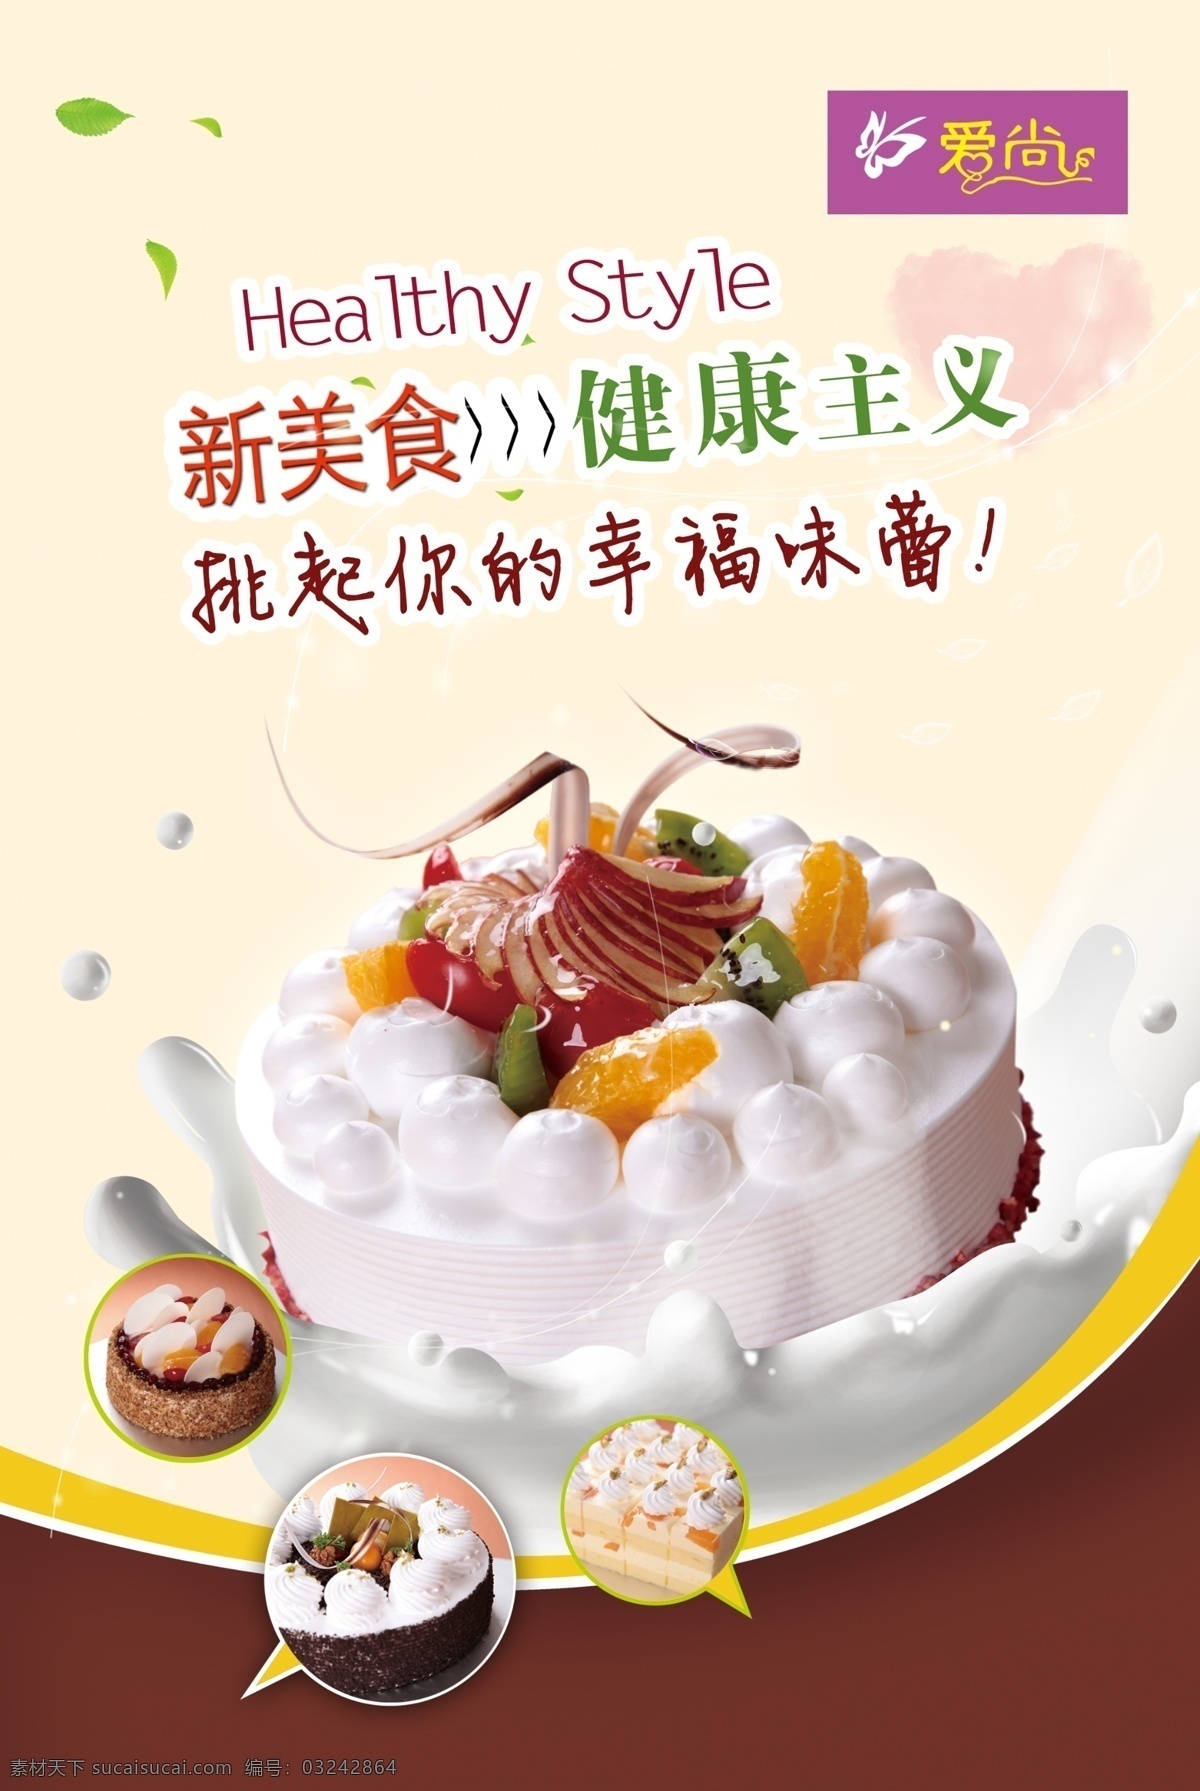 蛋糕海报 蛋糕 蝴蝶 水果 小蛋糕 树叶 广告设计模板 源文件